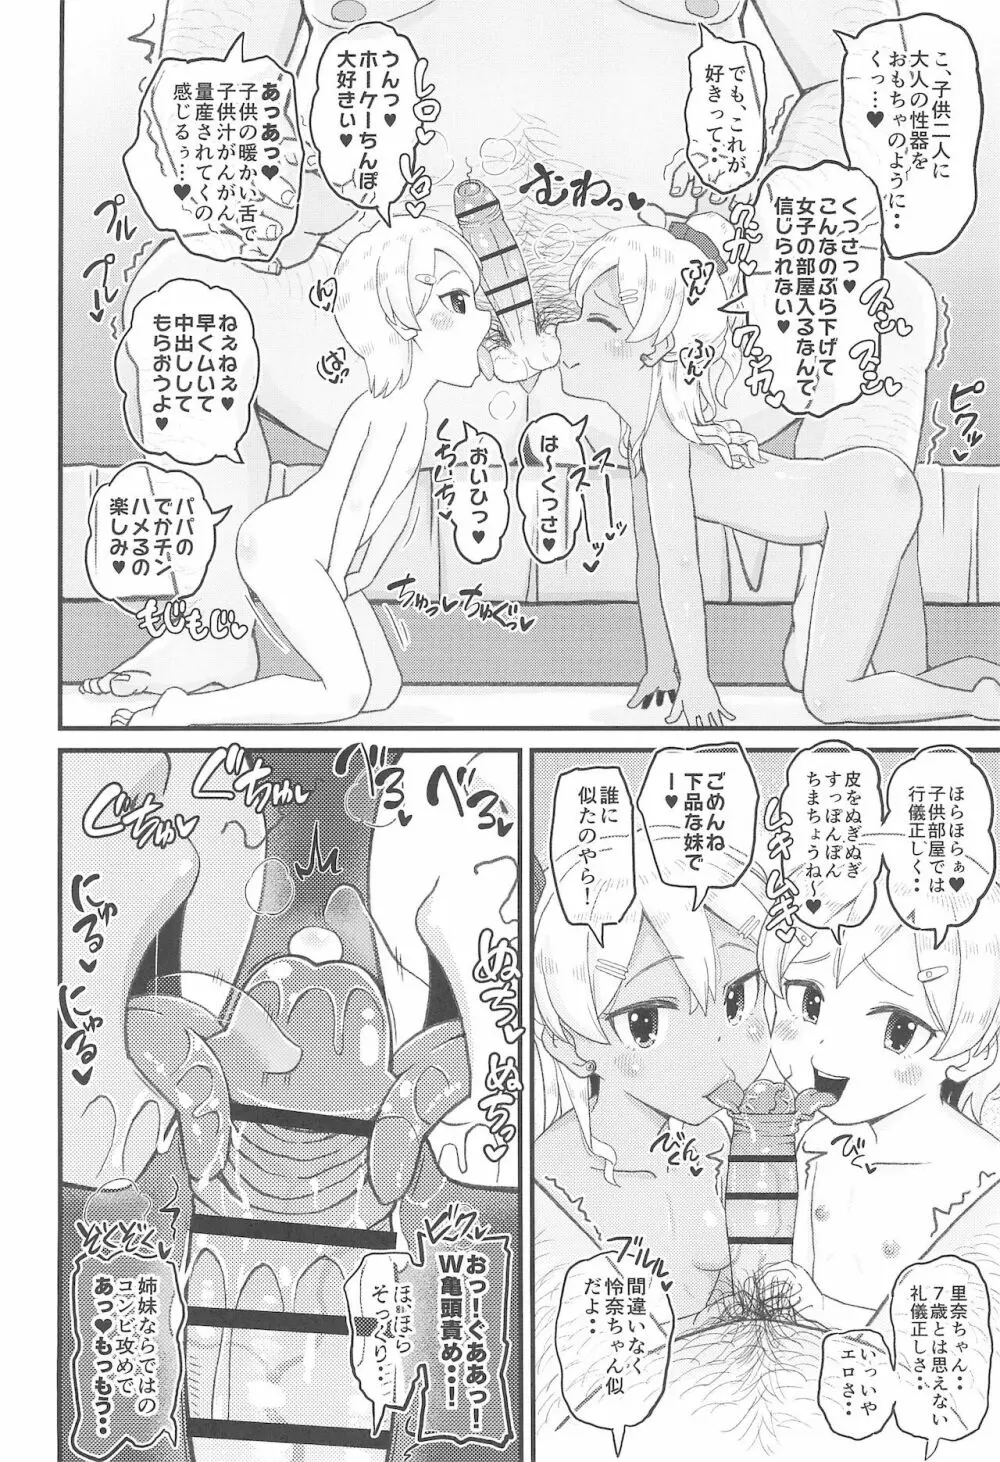 ロリビッチギャルとパパ活ックス!! - page16